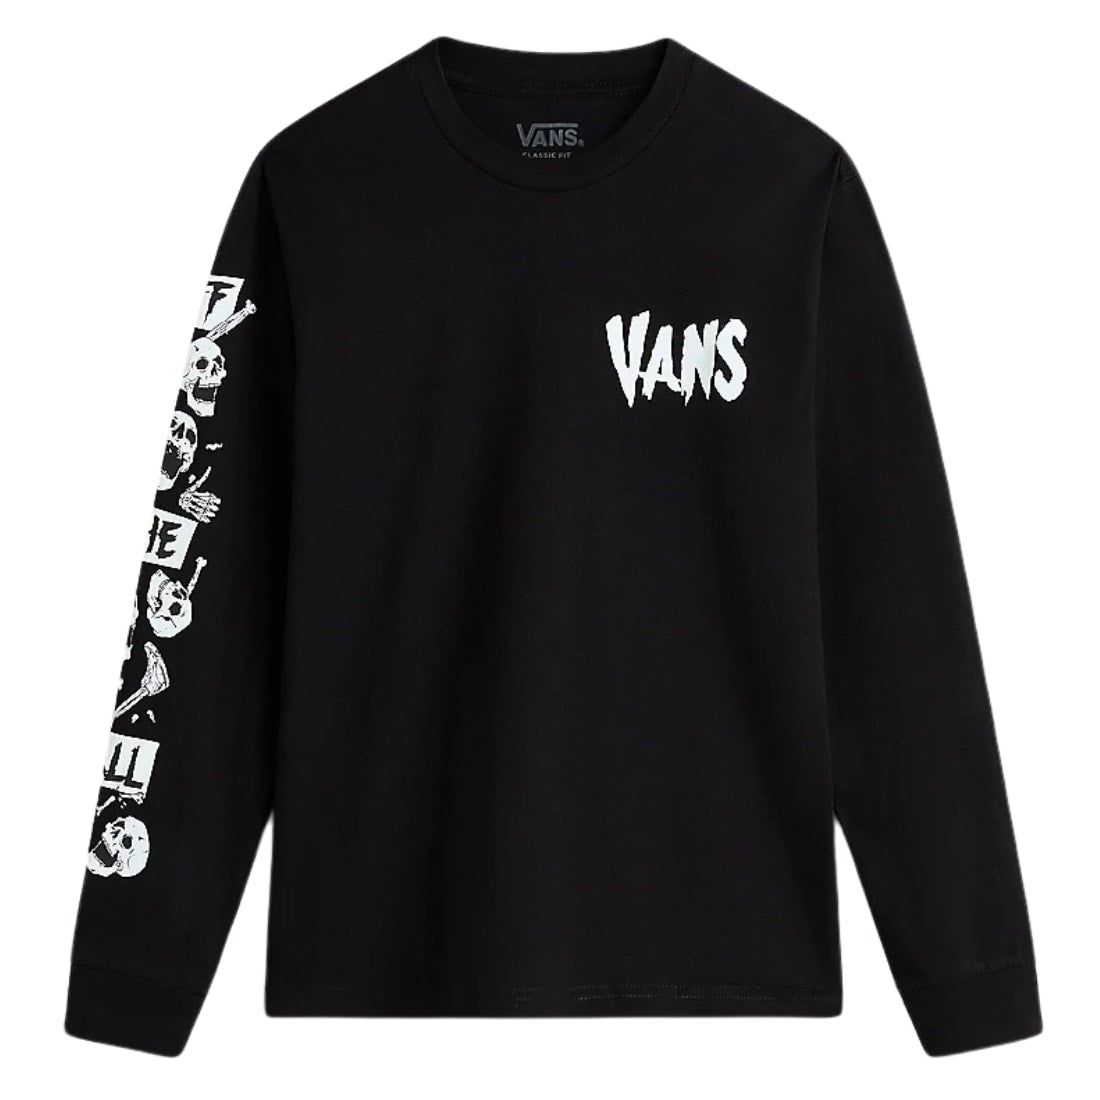 Vans Kids Skeleton Long Sleeve T-Shirt - Black - Boys Skate Brand T-Shirt by Vans